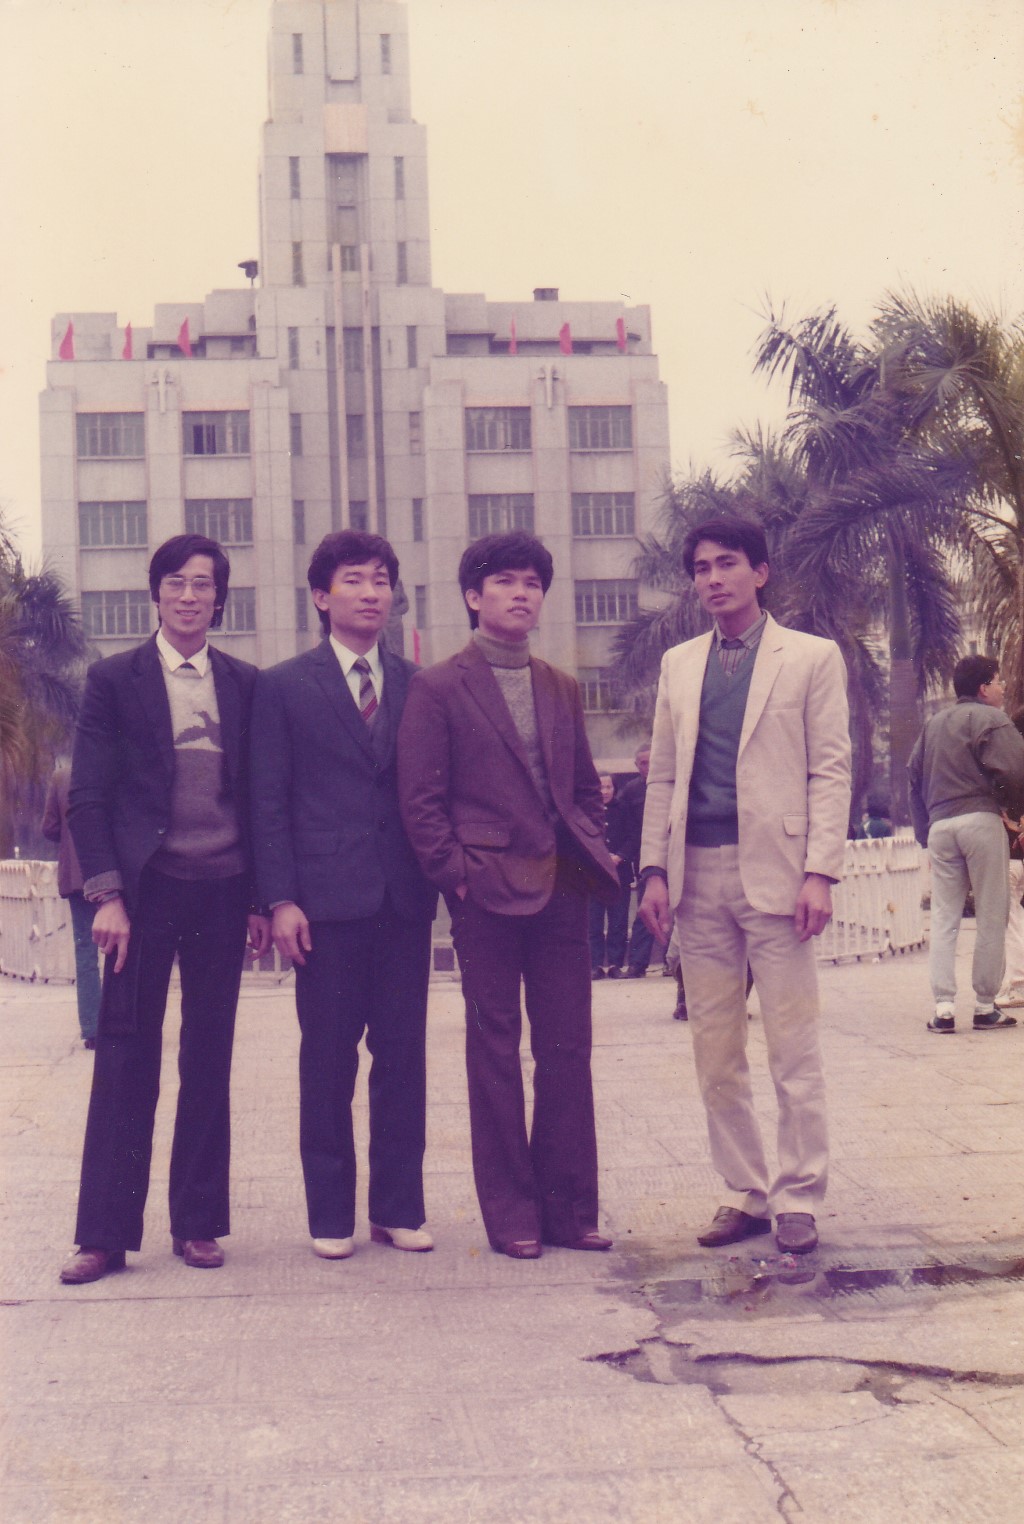 Ông Lư Bính (ngoài cùng bên trái) cùng những người bạn lần đầu “leo lên xe lửa,” chụp ảnh tại Quảng Châu vào dịp Tết Nguyên đán năm 1985. (Ảnh do ông Lư Bính cung cấp)